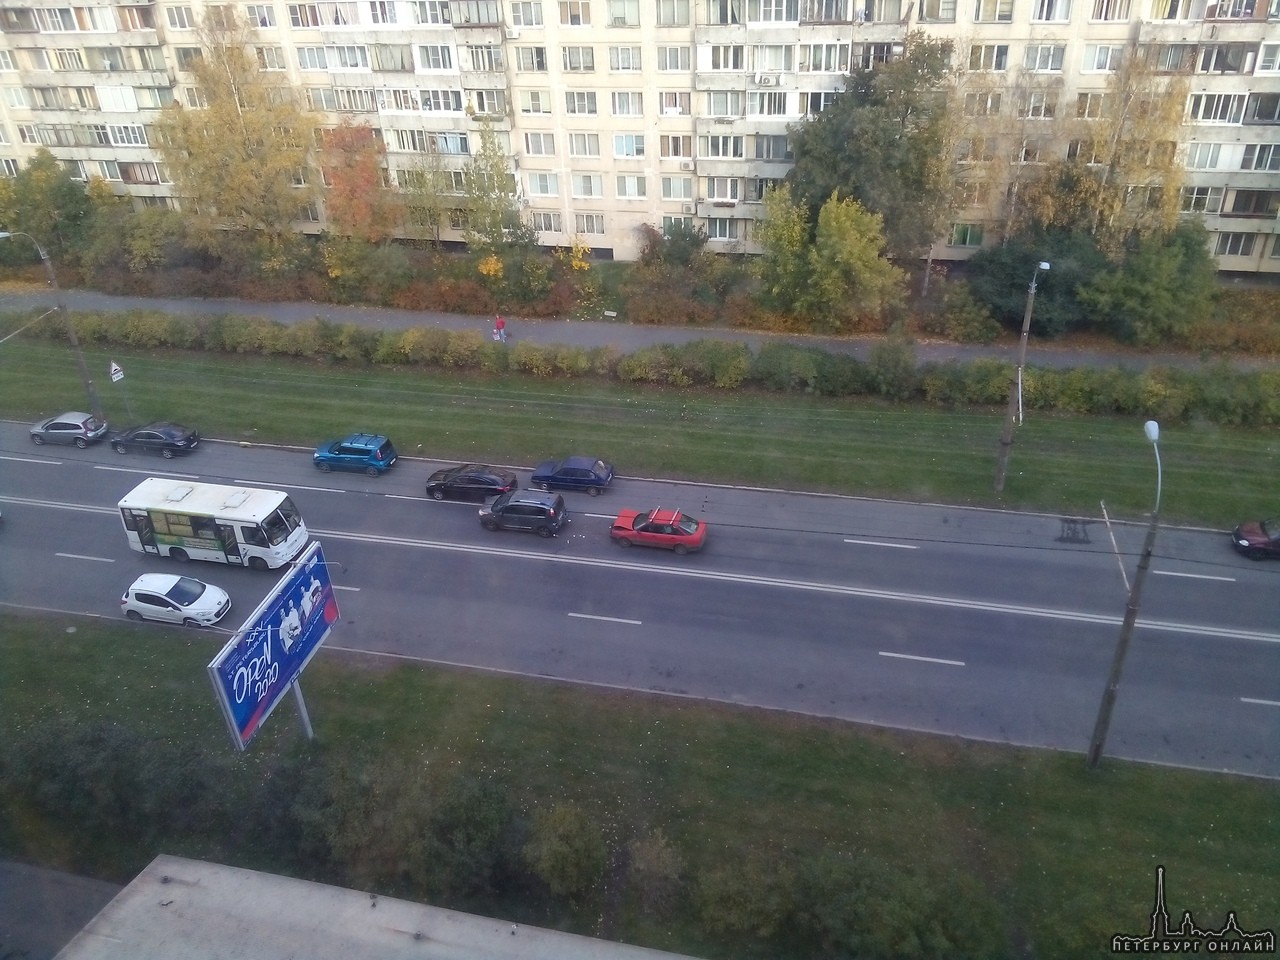 Двое столкнулись напротив дома №71 по Будапештской улице. Оба водителя в порядке.